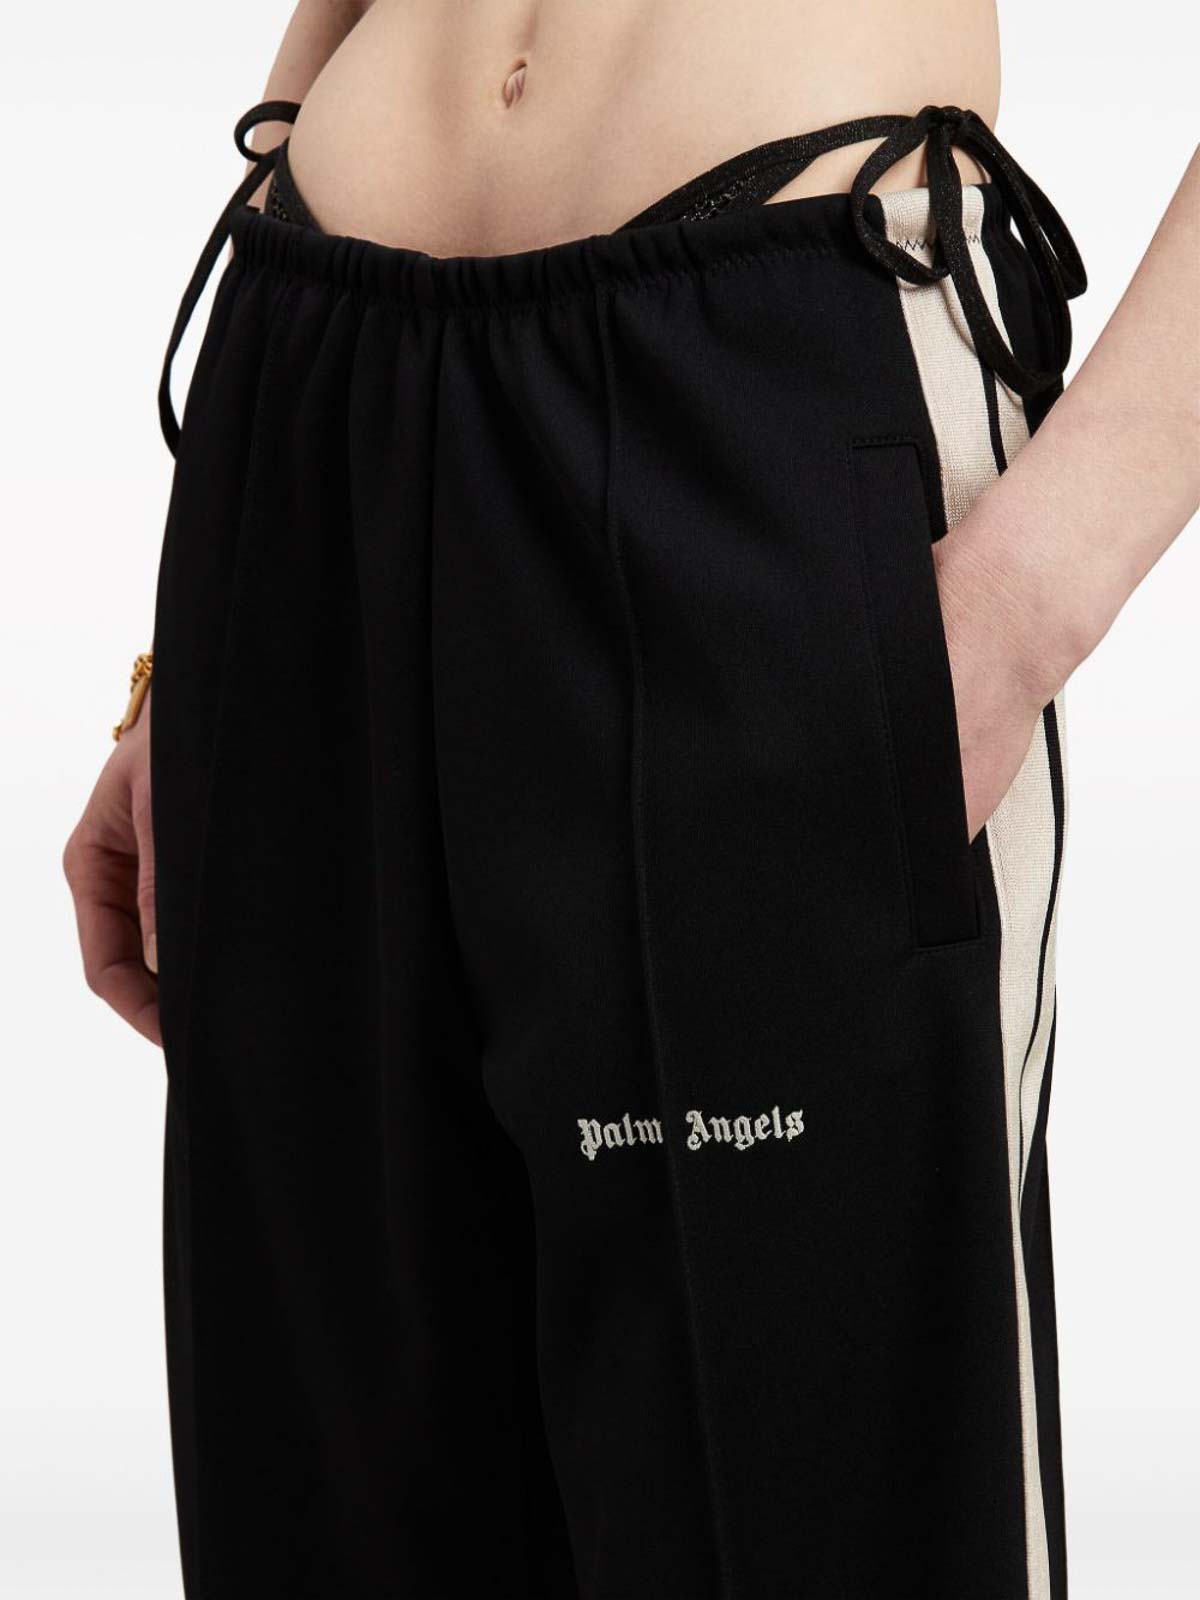 Shop Palm Angels Side-stripe Track Pants In Black